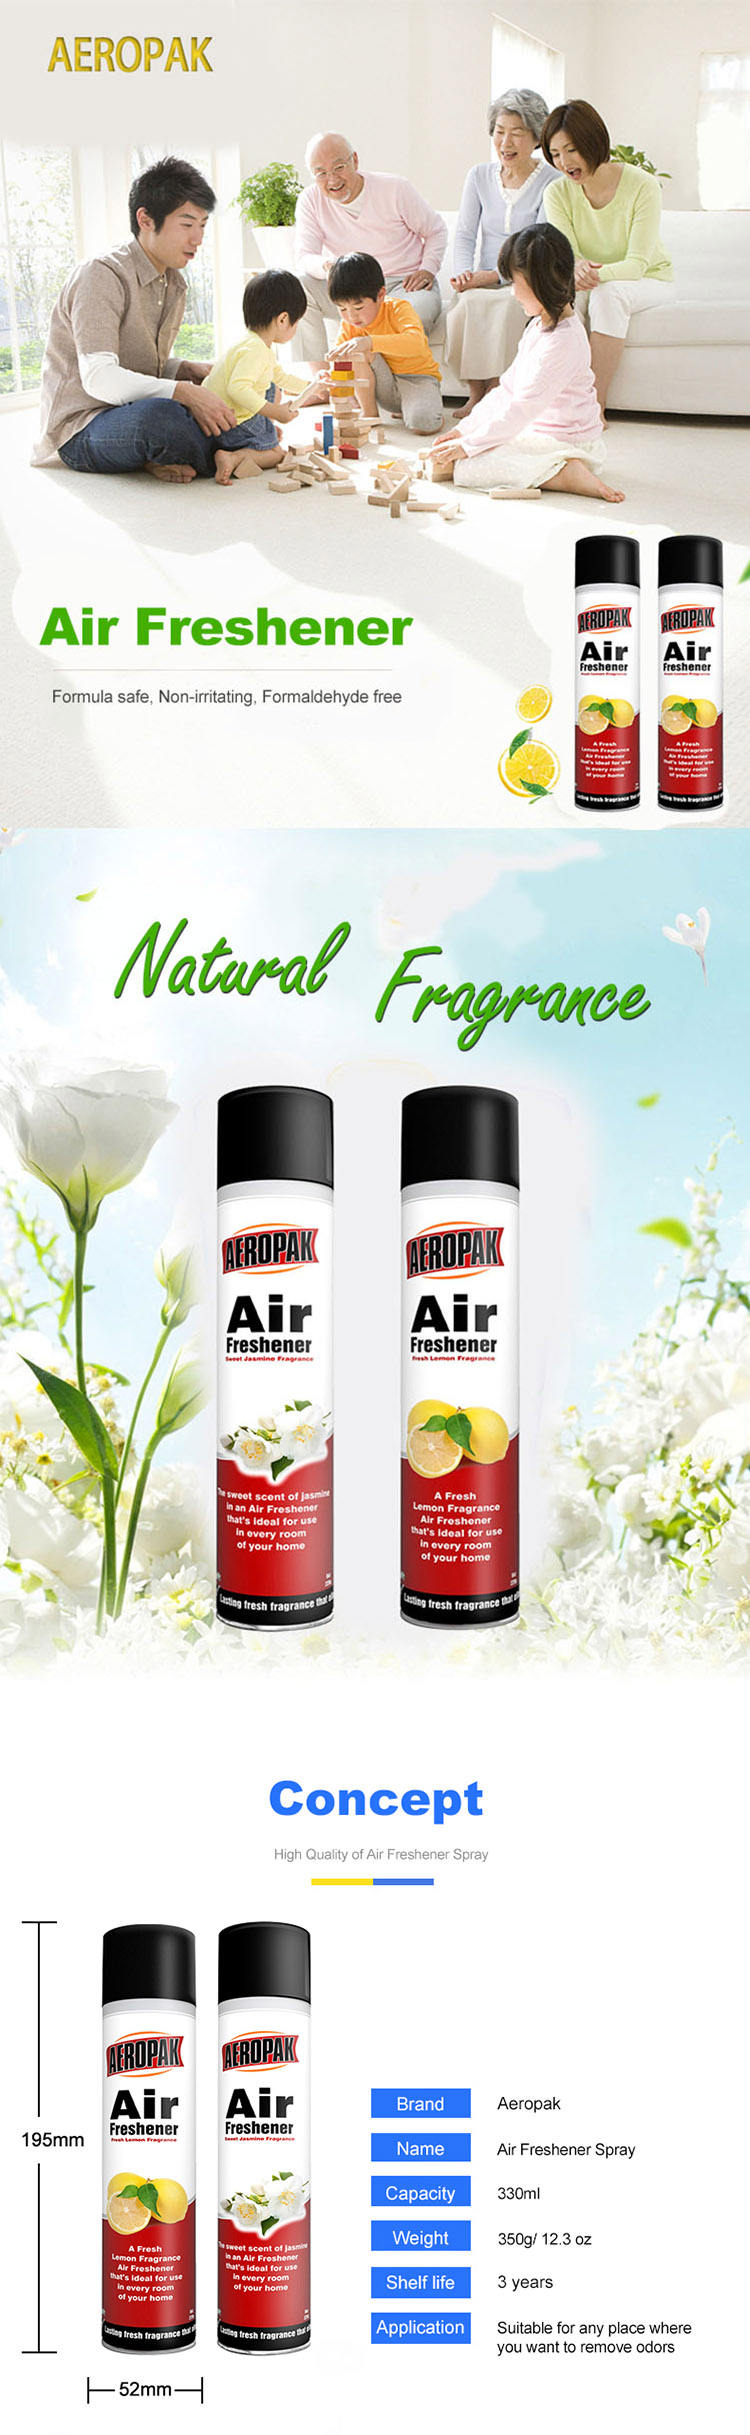 Aeropak Car Air Freshener Spray